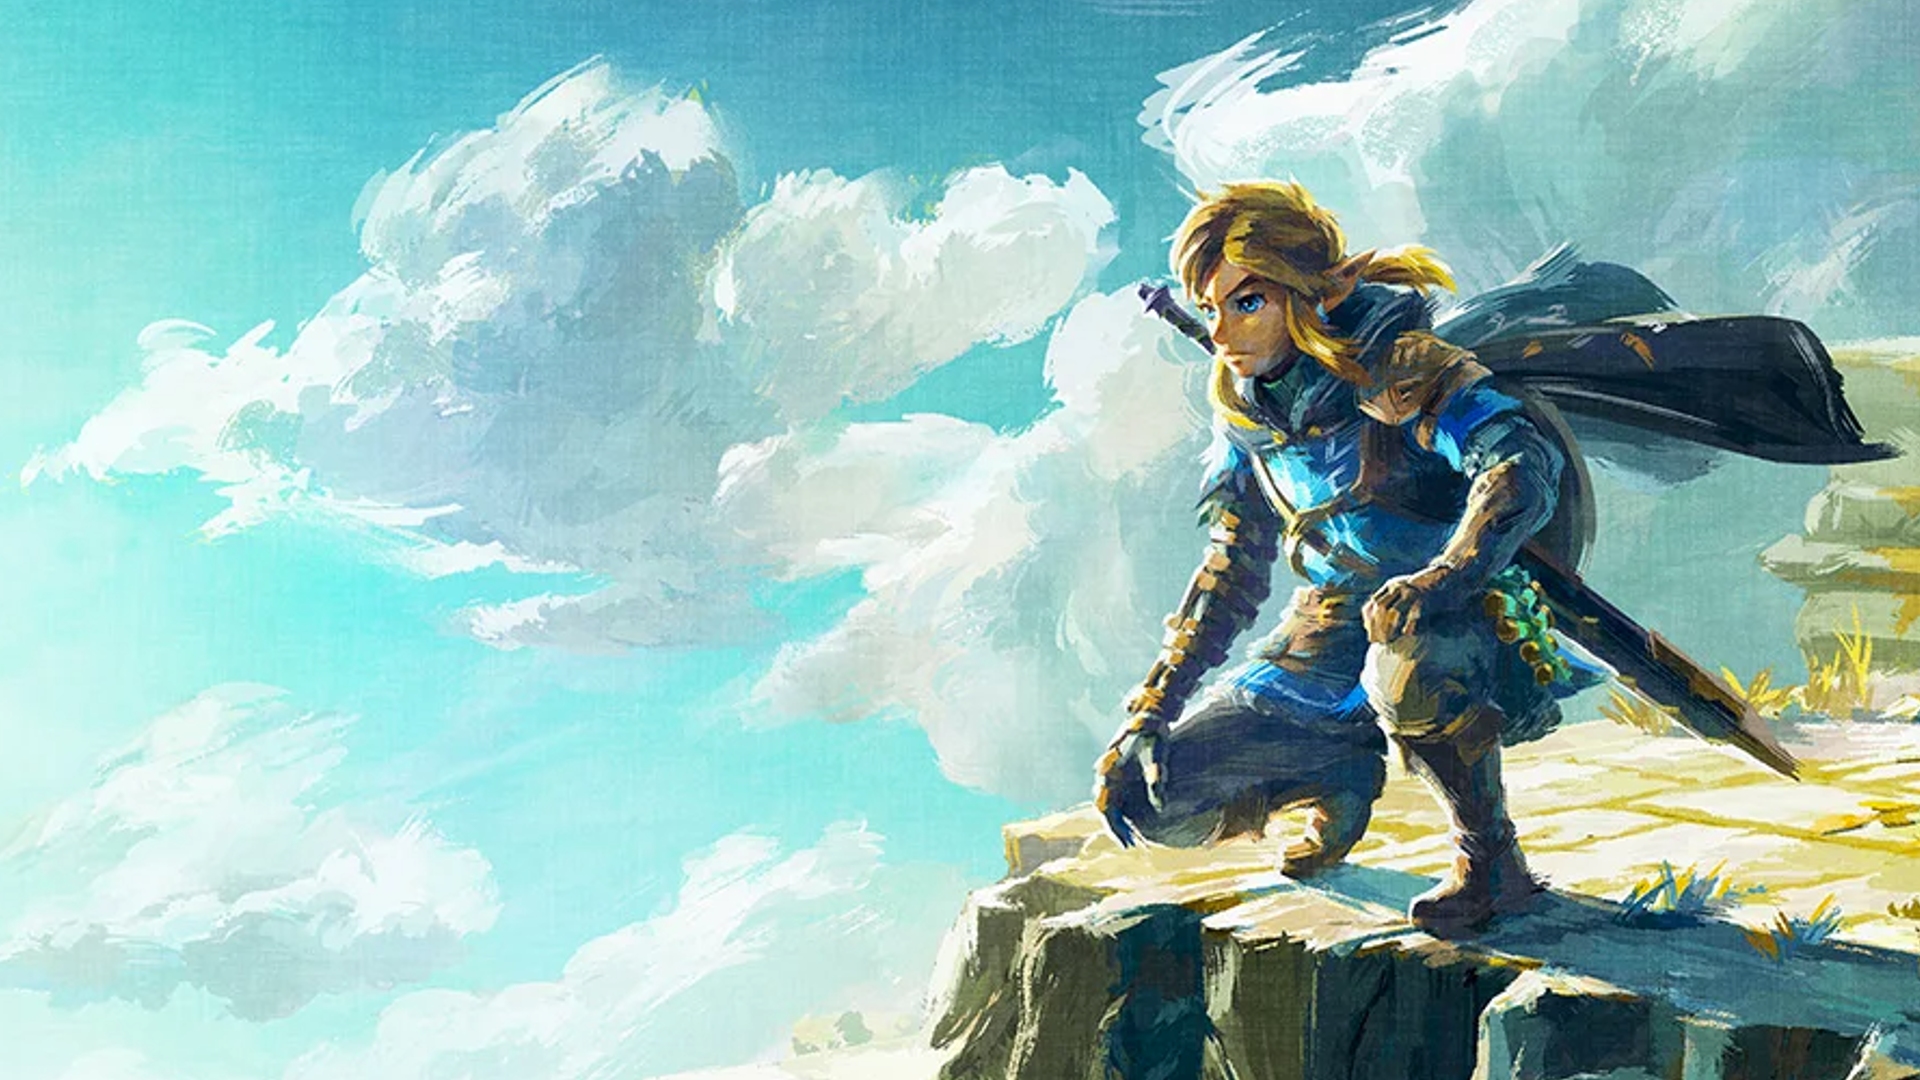 Detalles, pistas y mensajes ocultos en el tráiler de The Legend of Zelda:  Tears of the Kingdom